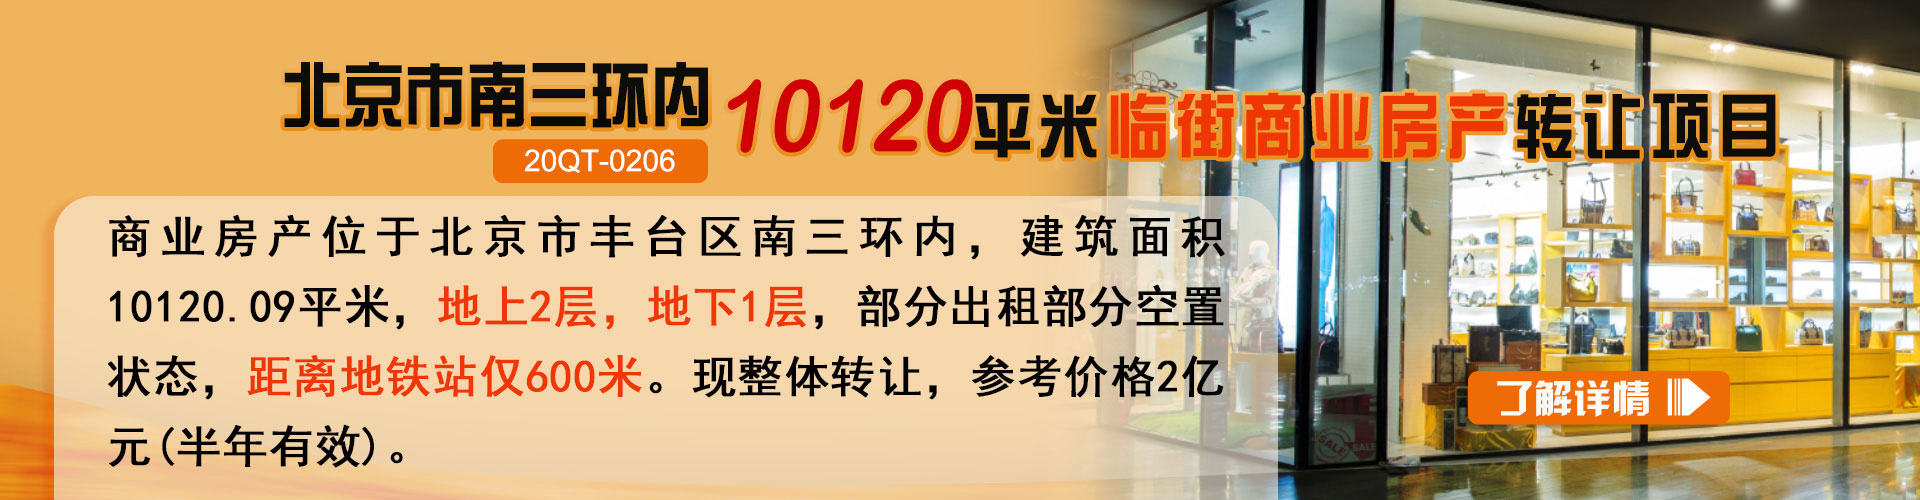 商业房产|北京市南三环内10120平米临街商业房产转让项目20QT-0206